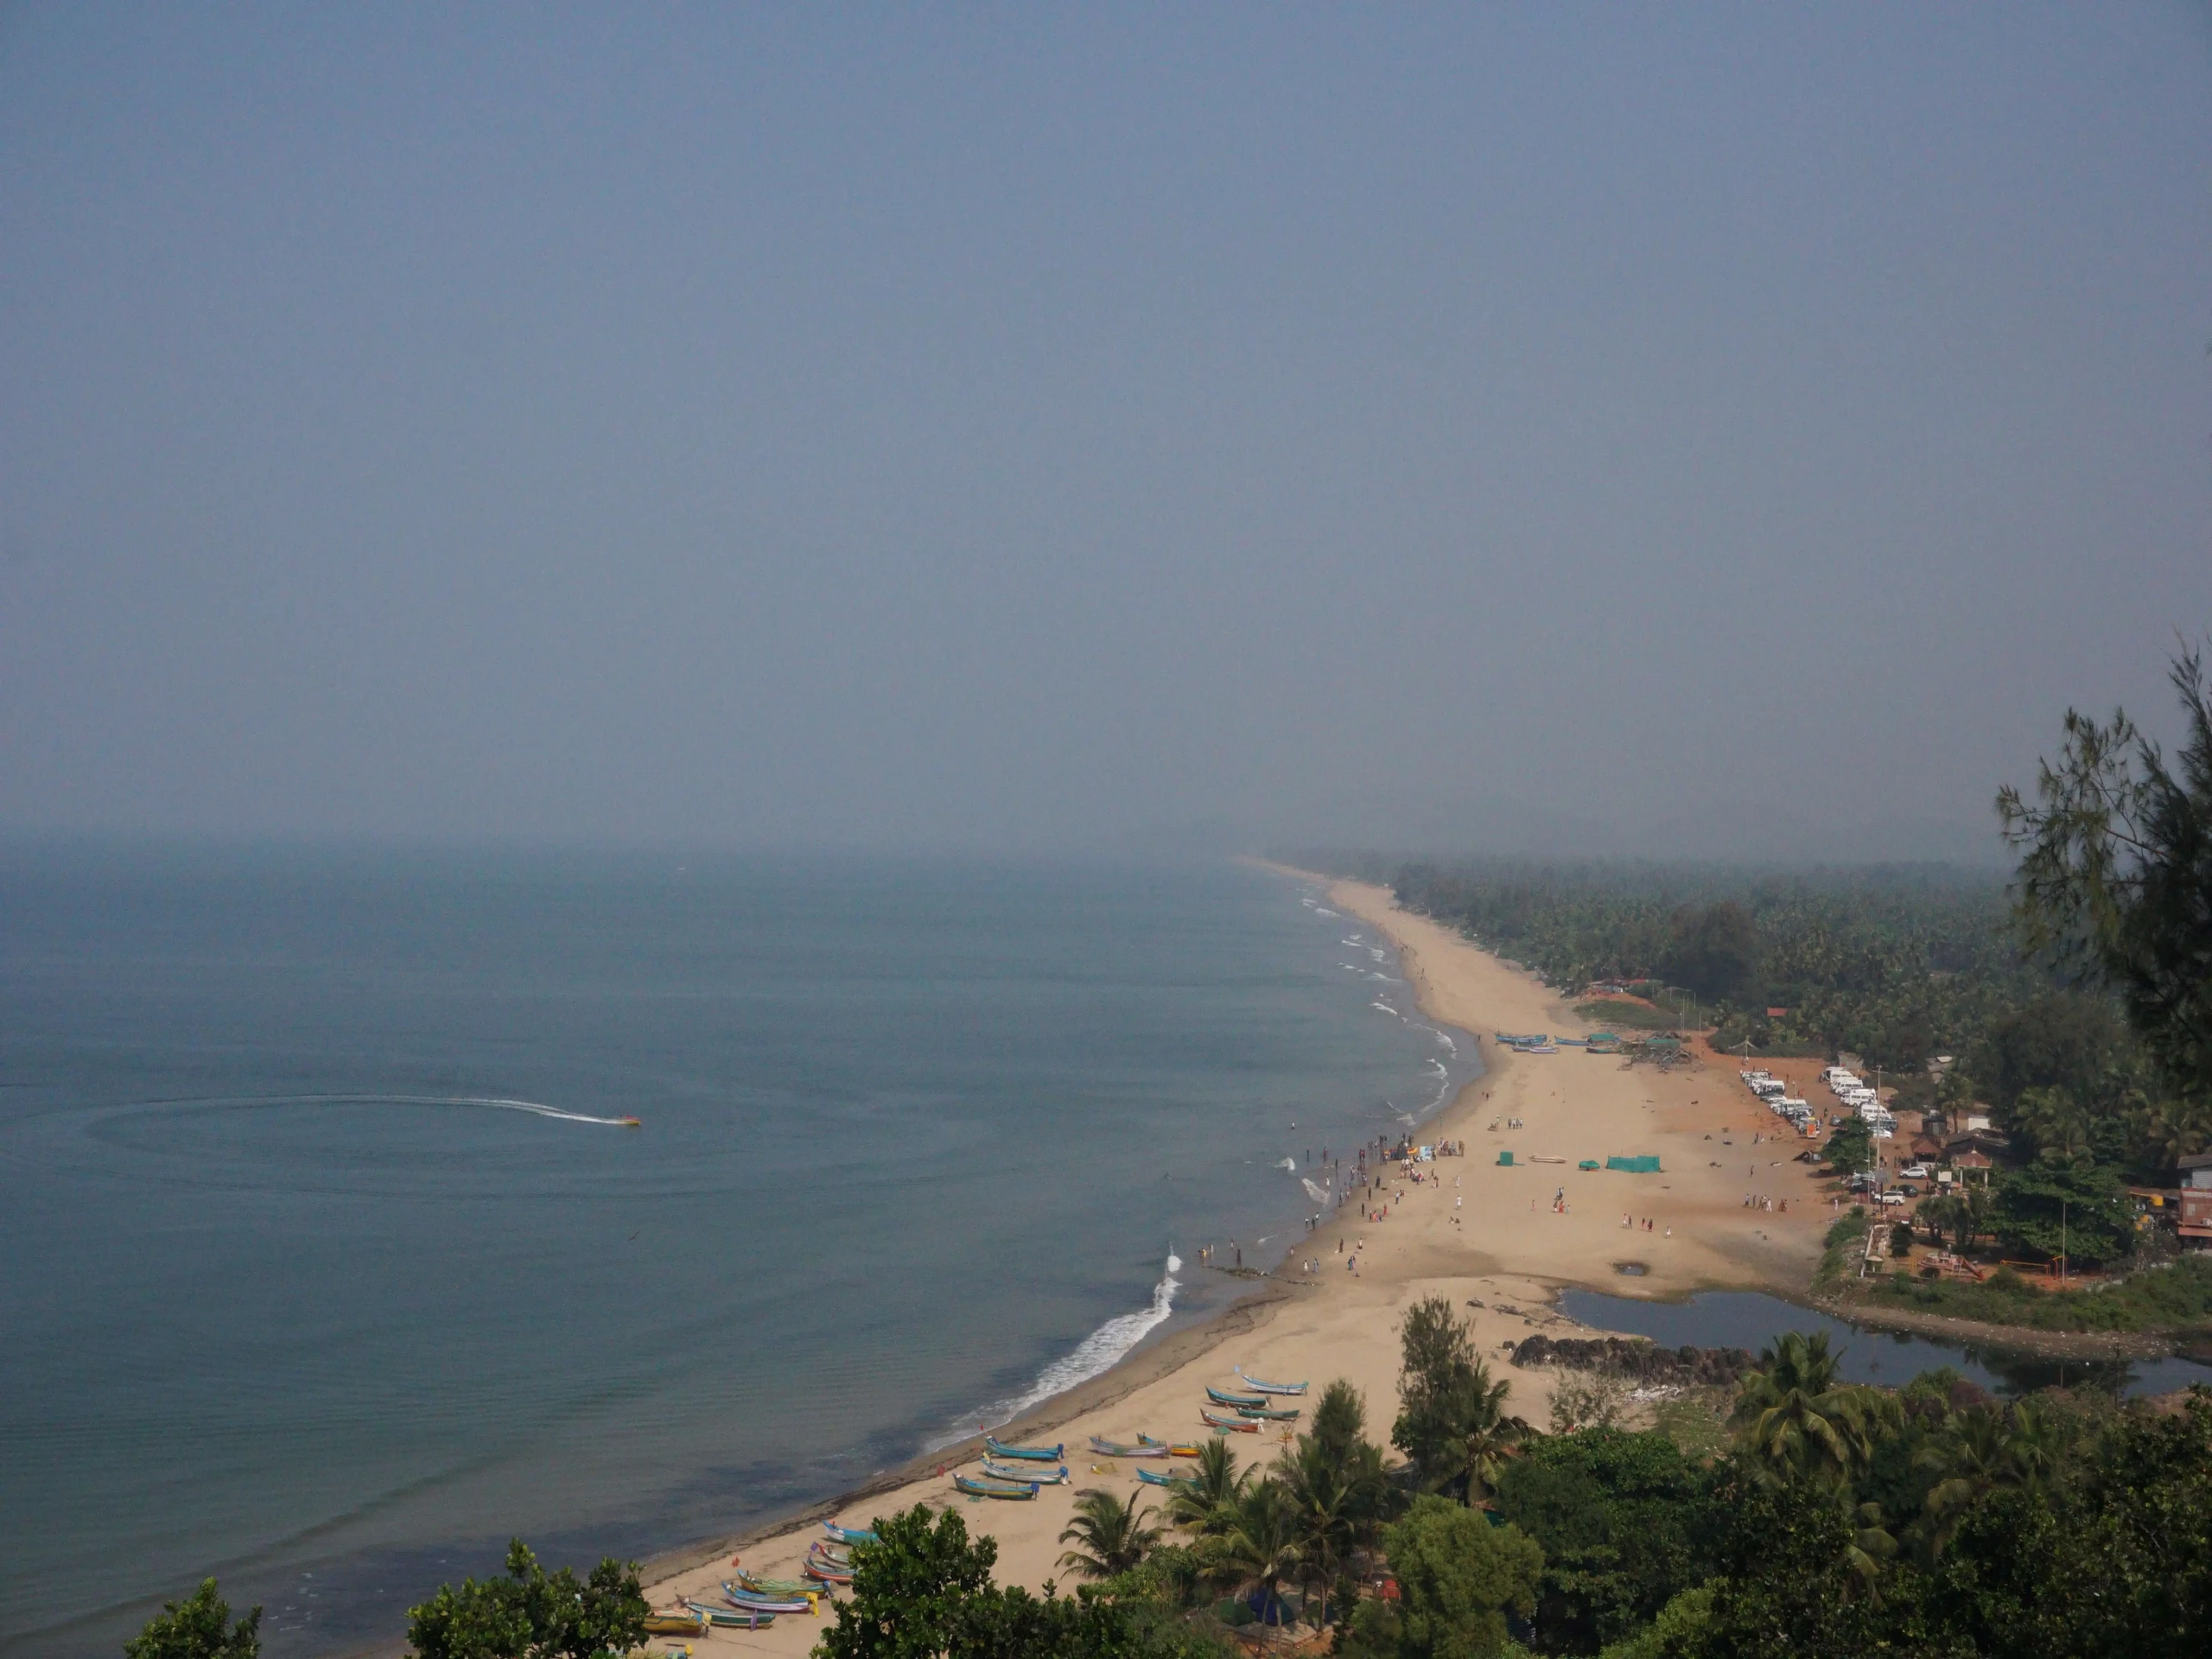 View of Gokarna beach from Zostel